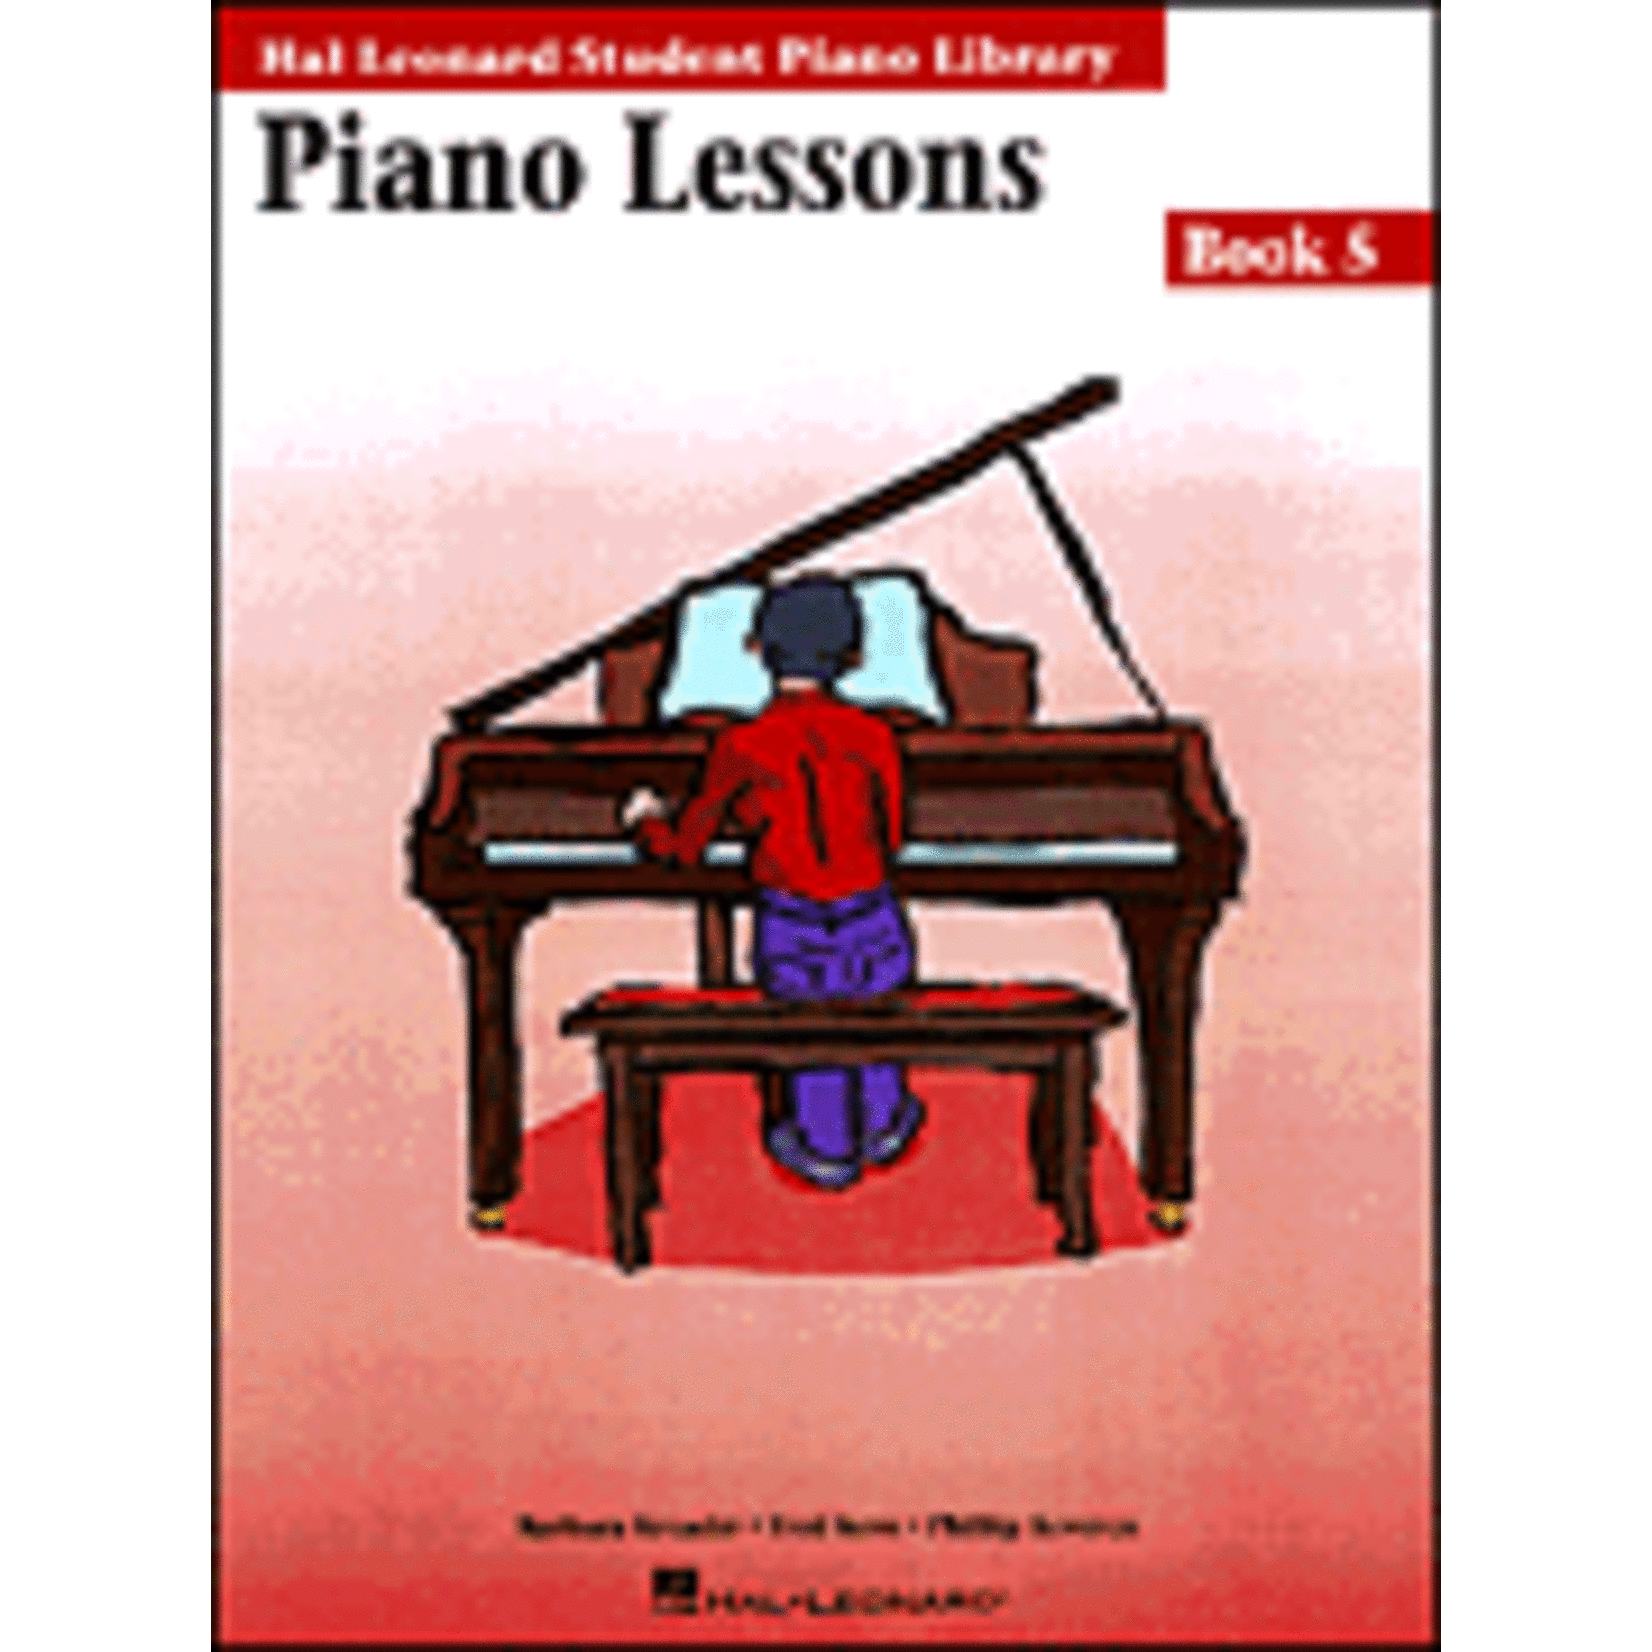 Hal Leonard Piano Lessons Book 5